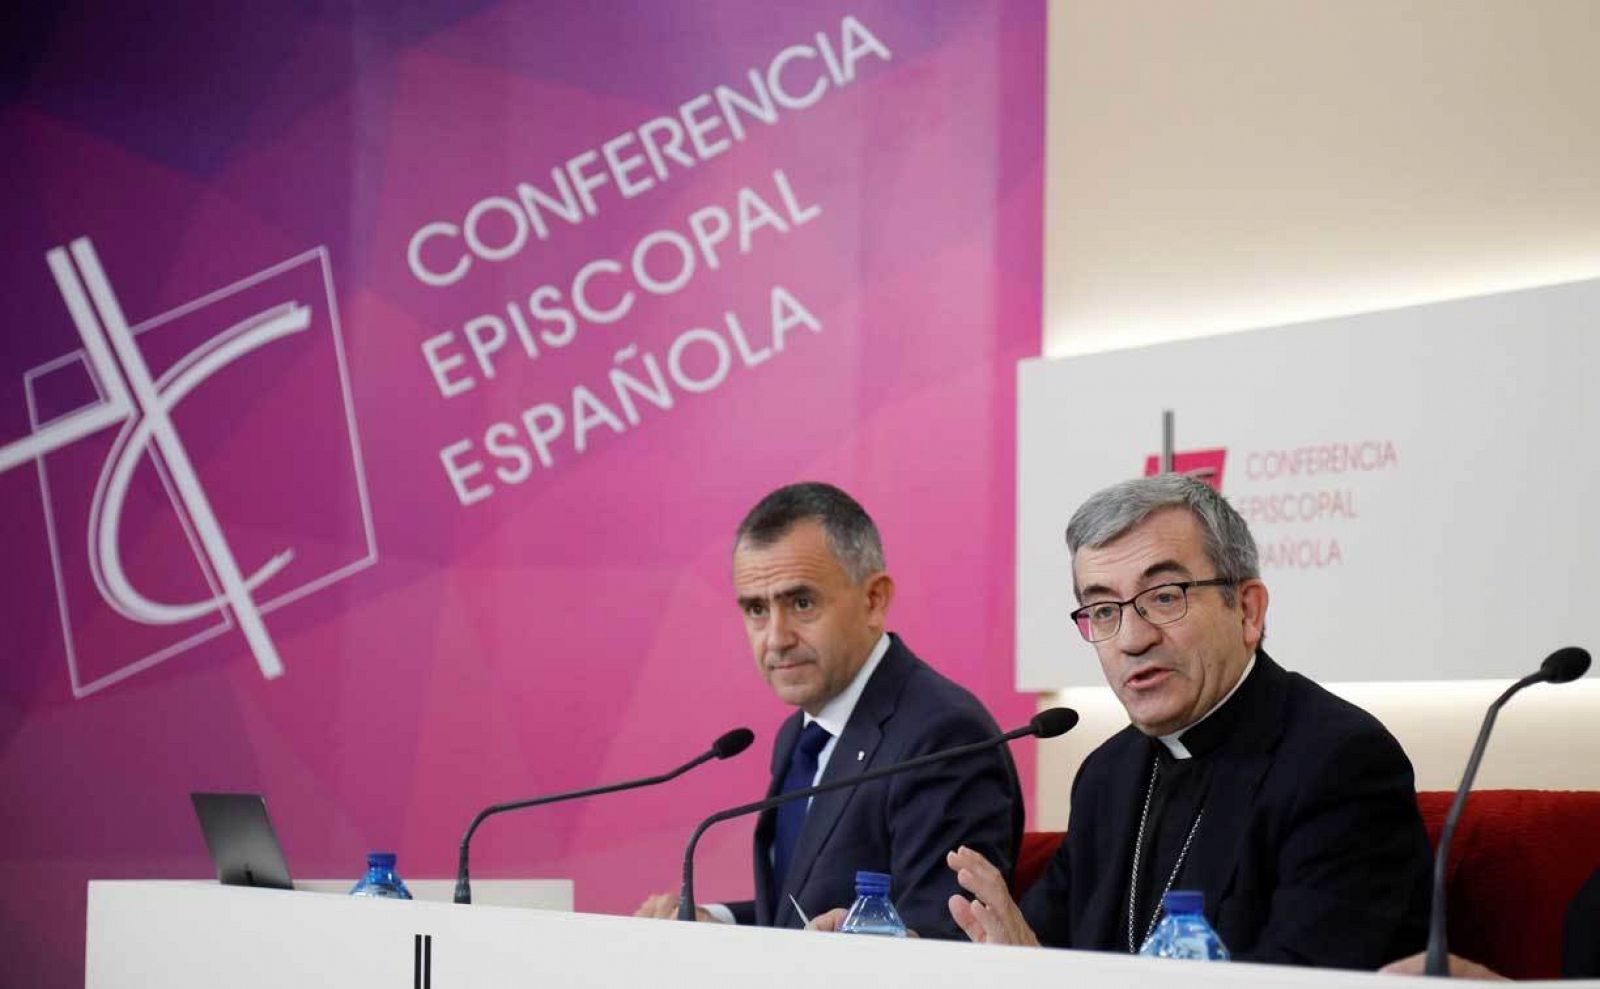 El secretario general de la Conferencia Episcopal Española (CEE), Luis Argüello, y el vicesecretario para asuntos económicos, Fernando Giménez Barriocanal